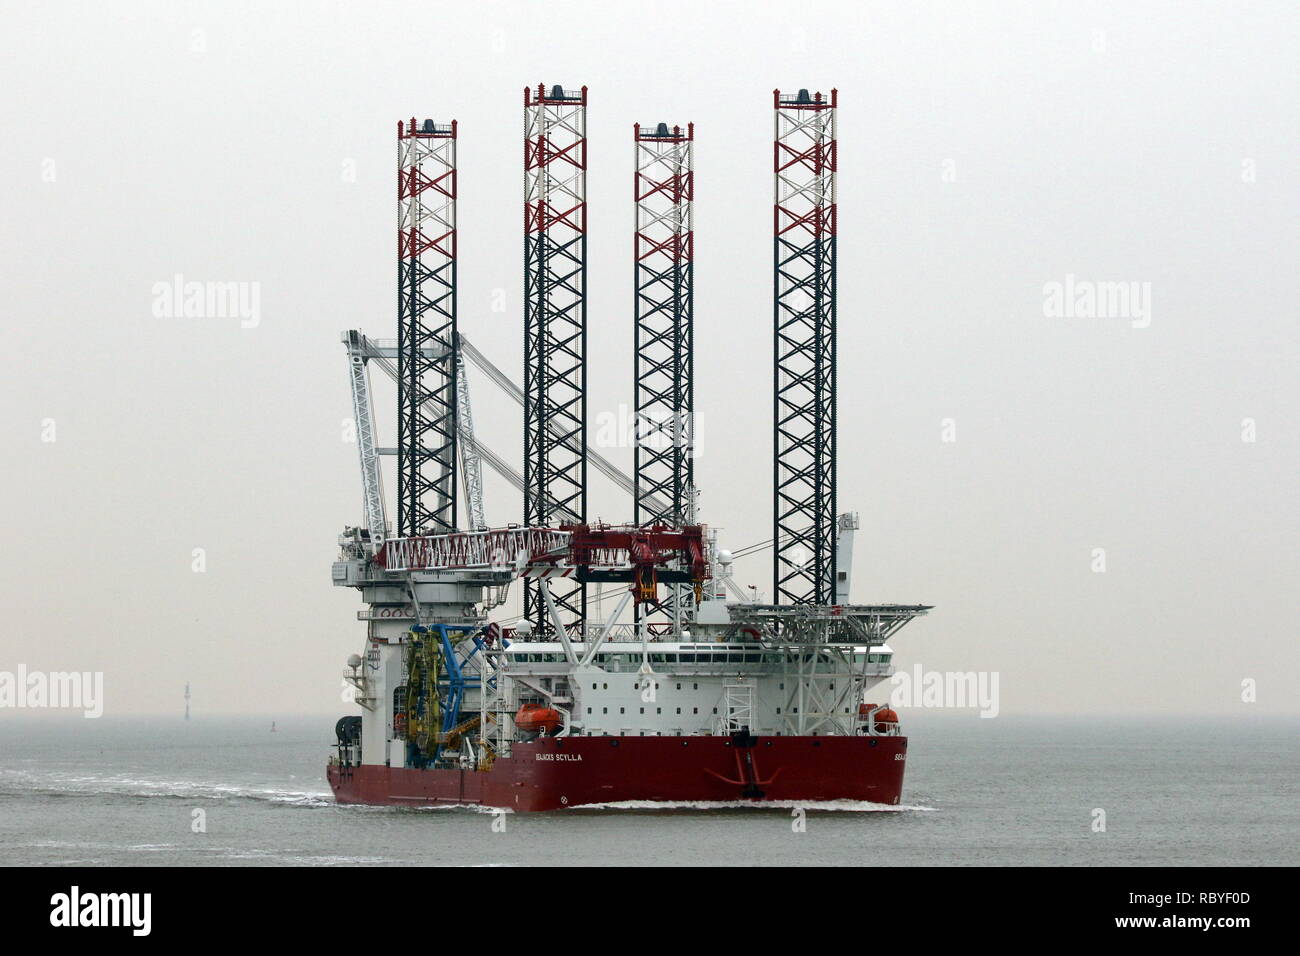 La turbina eolica Costruzione nave Seajacks Scilla raggiungerà il porto di Cuxhaven il 29 dicembre 2018 Foto Stock